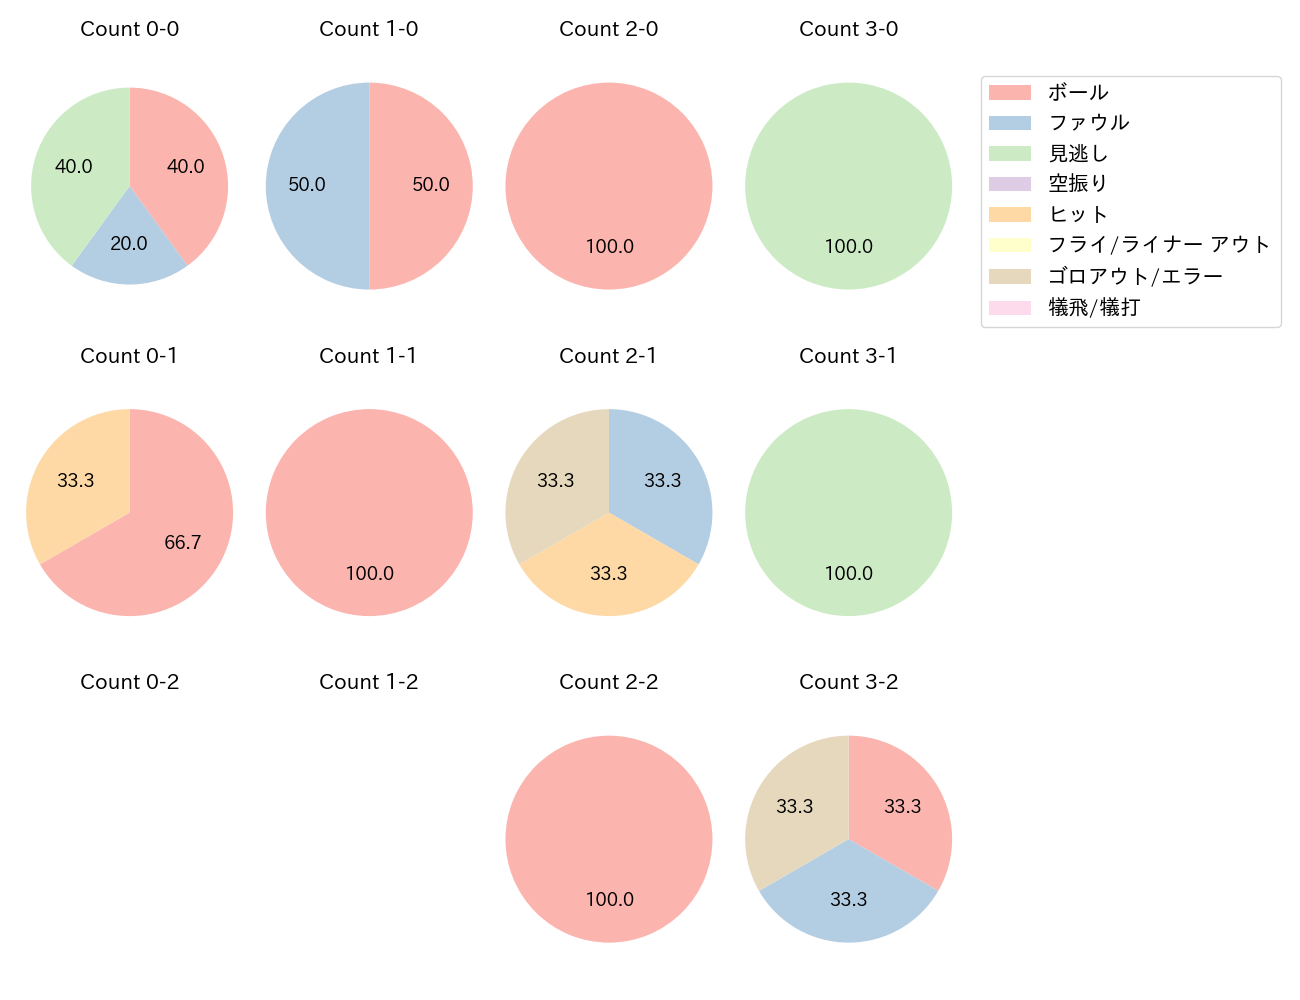 和田 康士朗の球数分布(2021年4月)